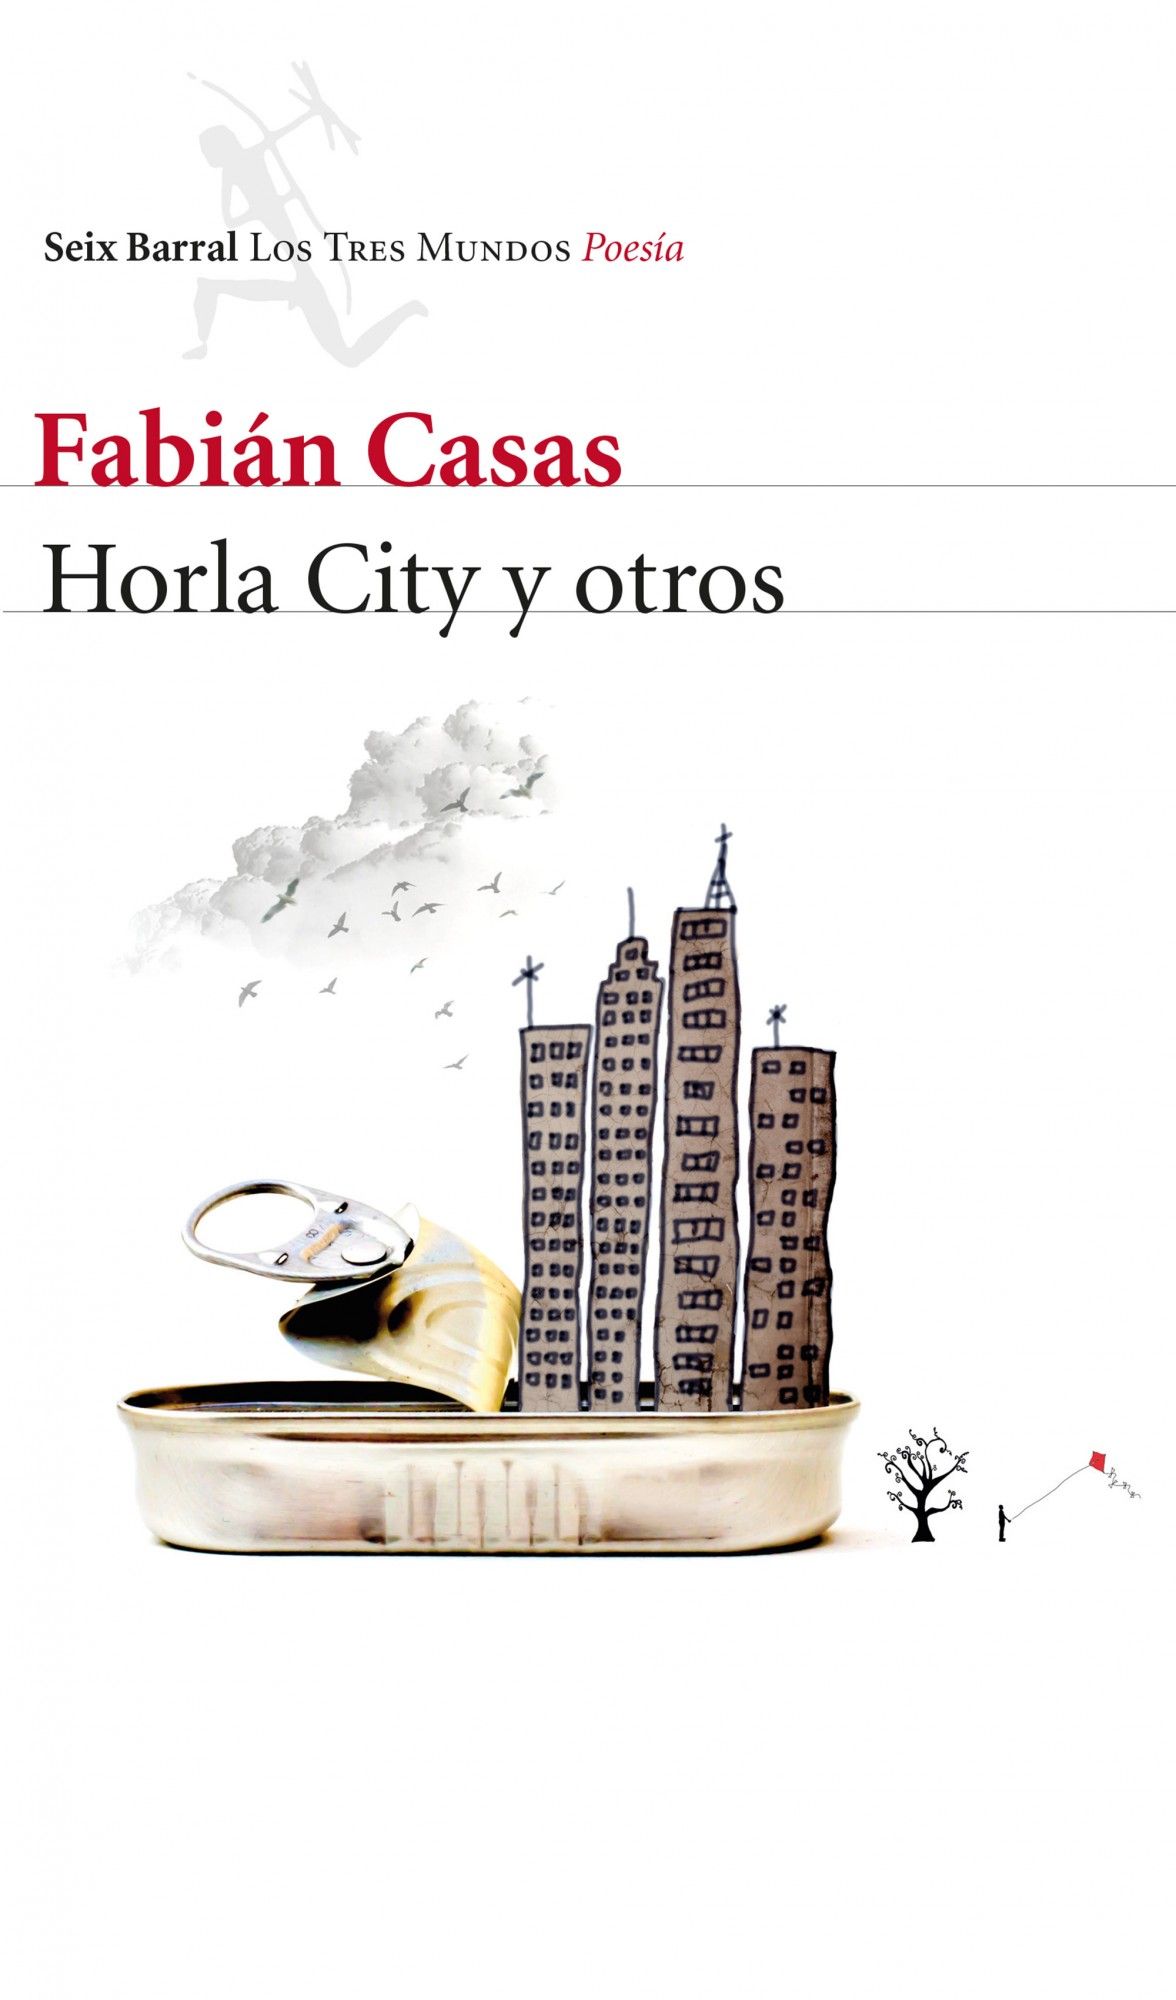 HORLA CITY Y OTROS. 